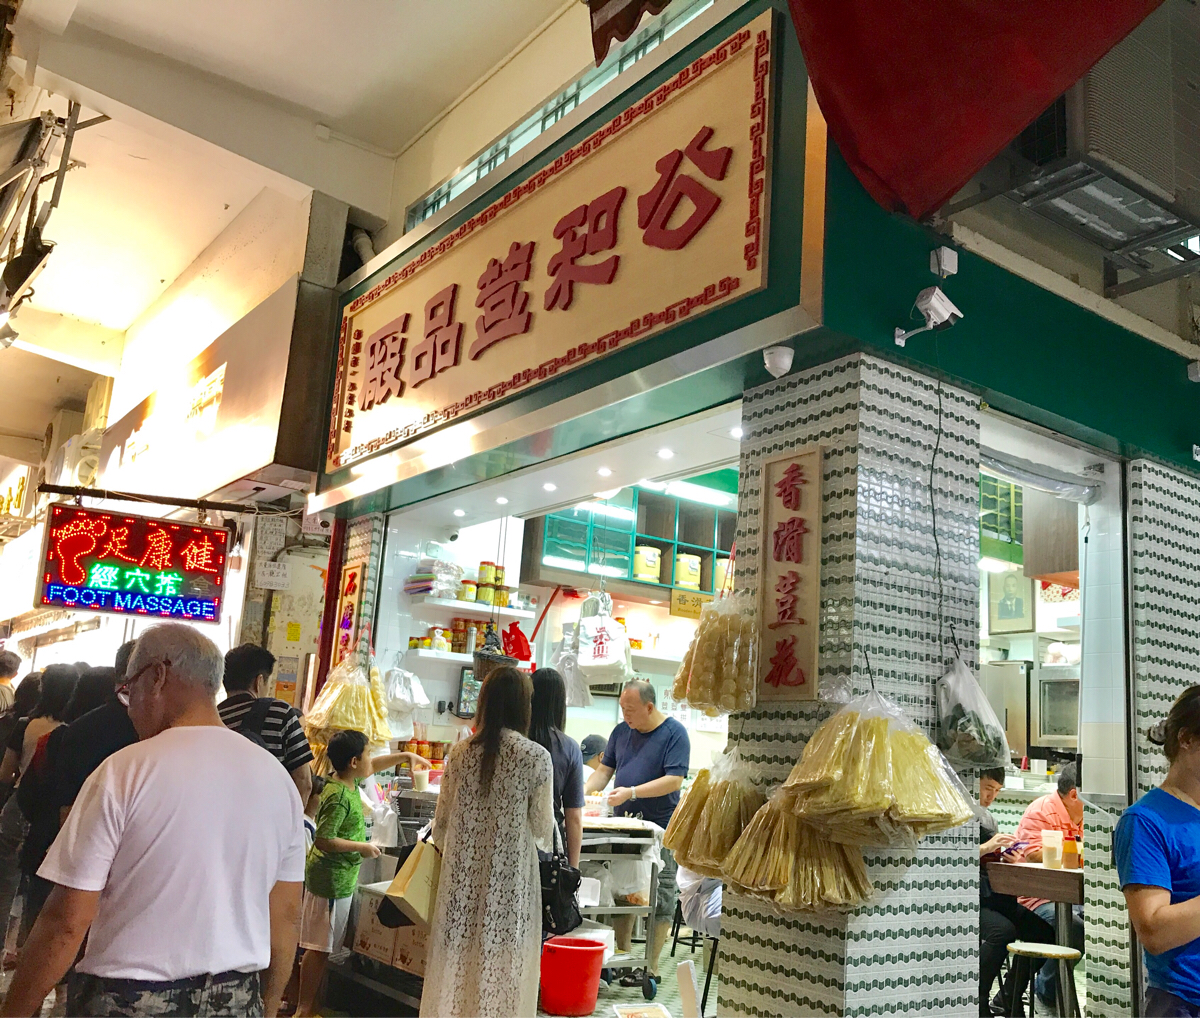 灣仔街市を抜けて、恭源堂で亀ゼリーを食べて、スリッパ叩きのお祓い「打小人」を覗いた～香港歴史散歩@灣仔